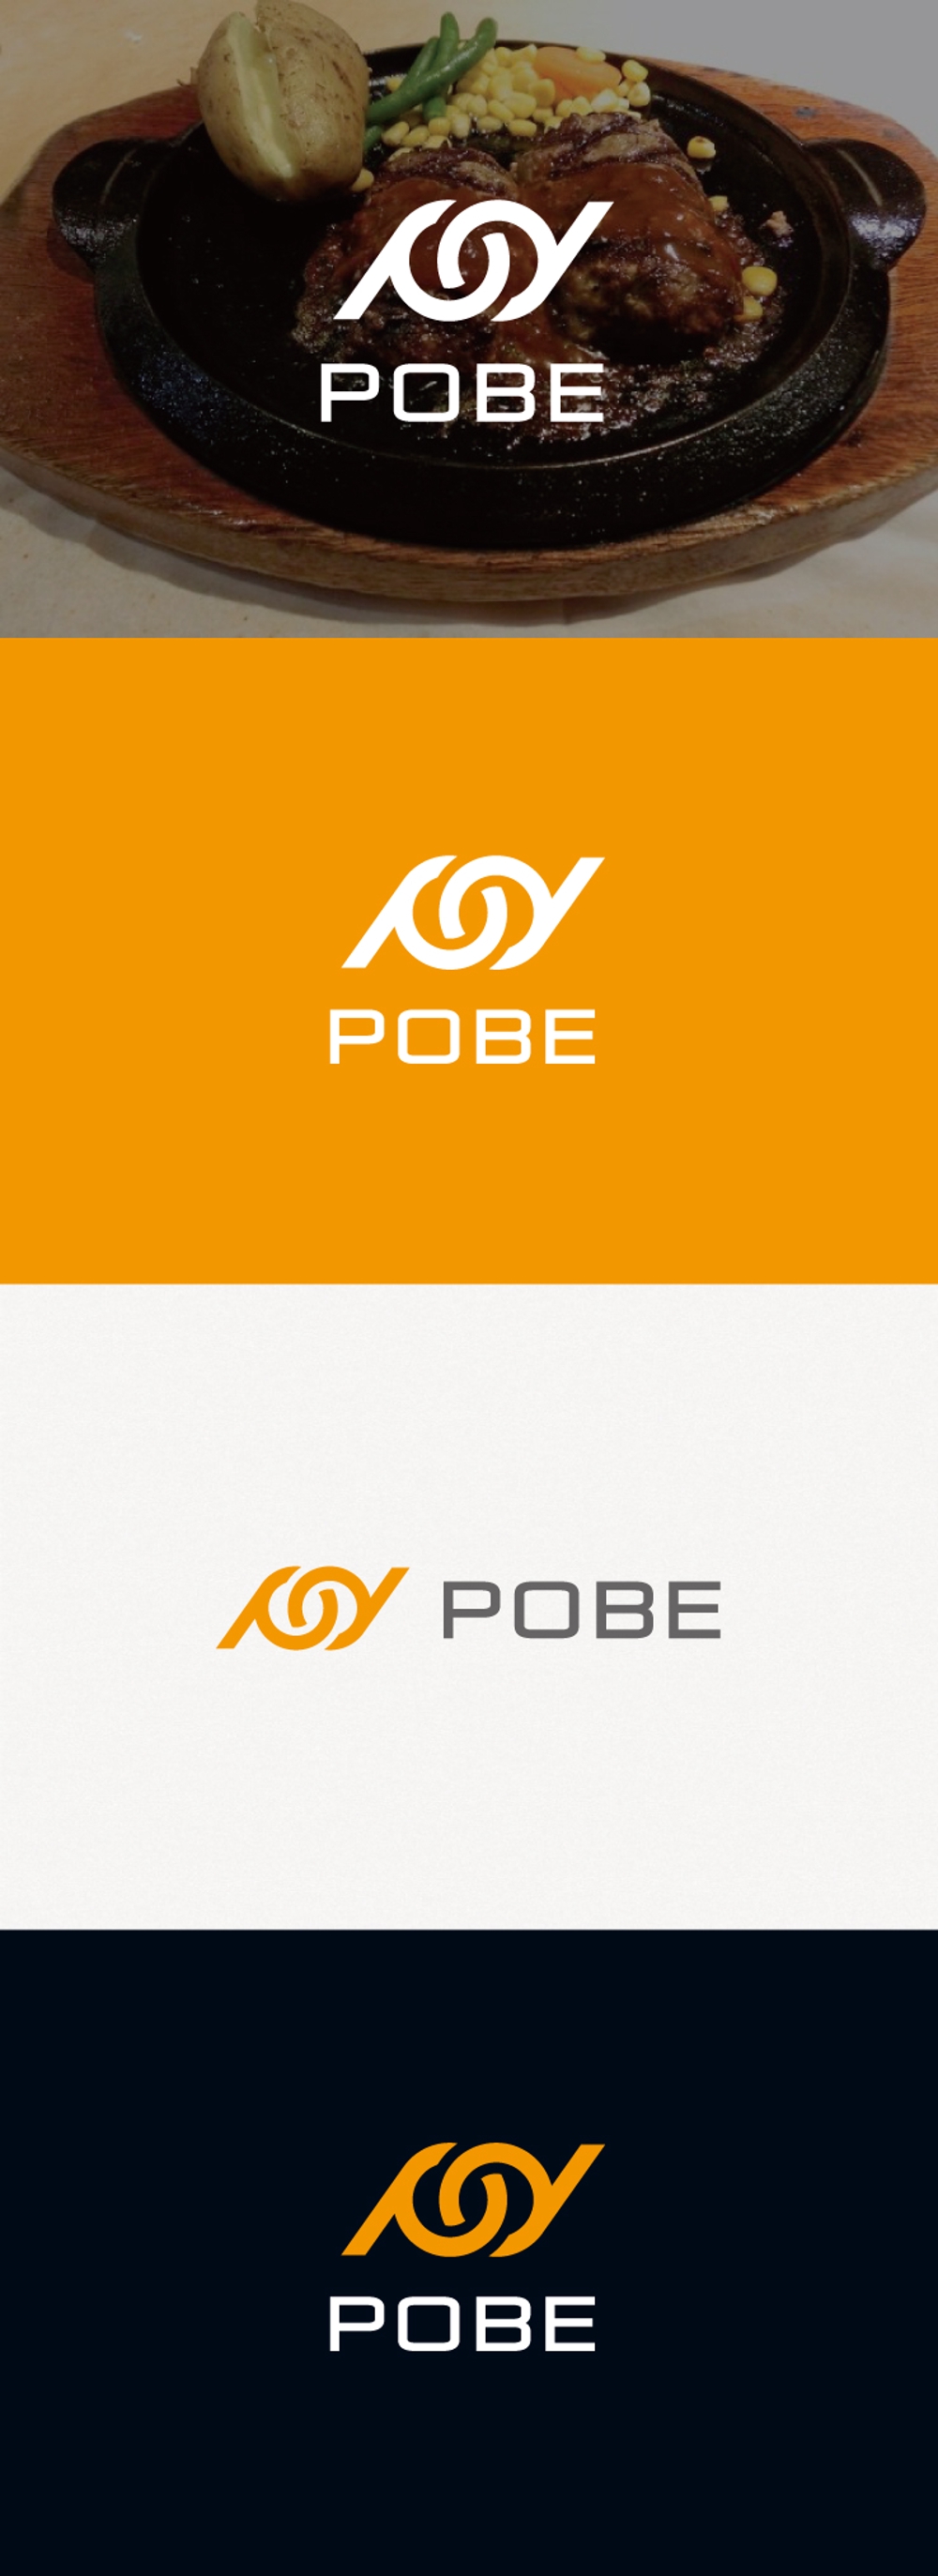 ハンバーグ、鉄板焼飲食店運営会社「POBE」のロゴ